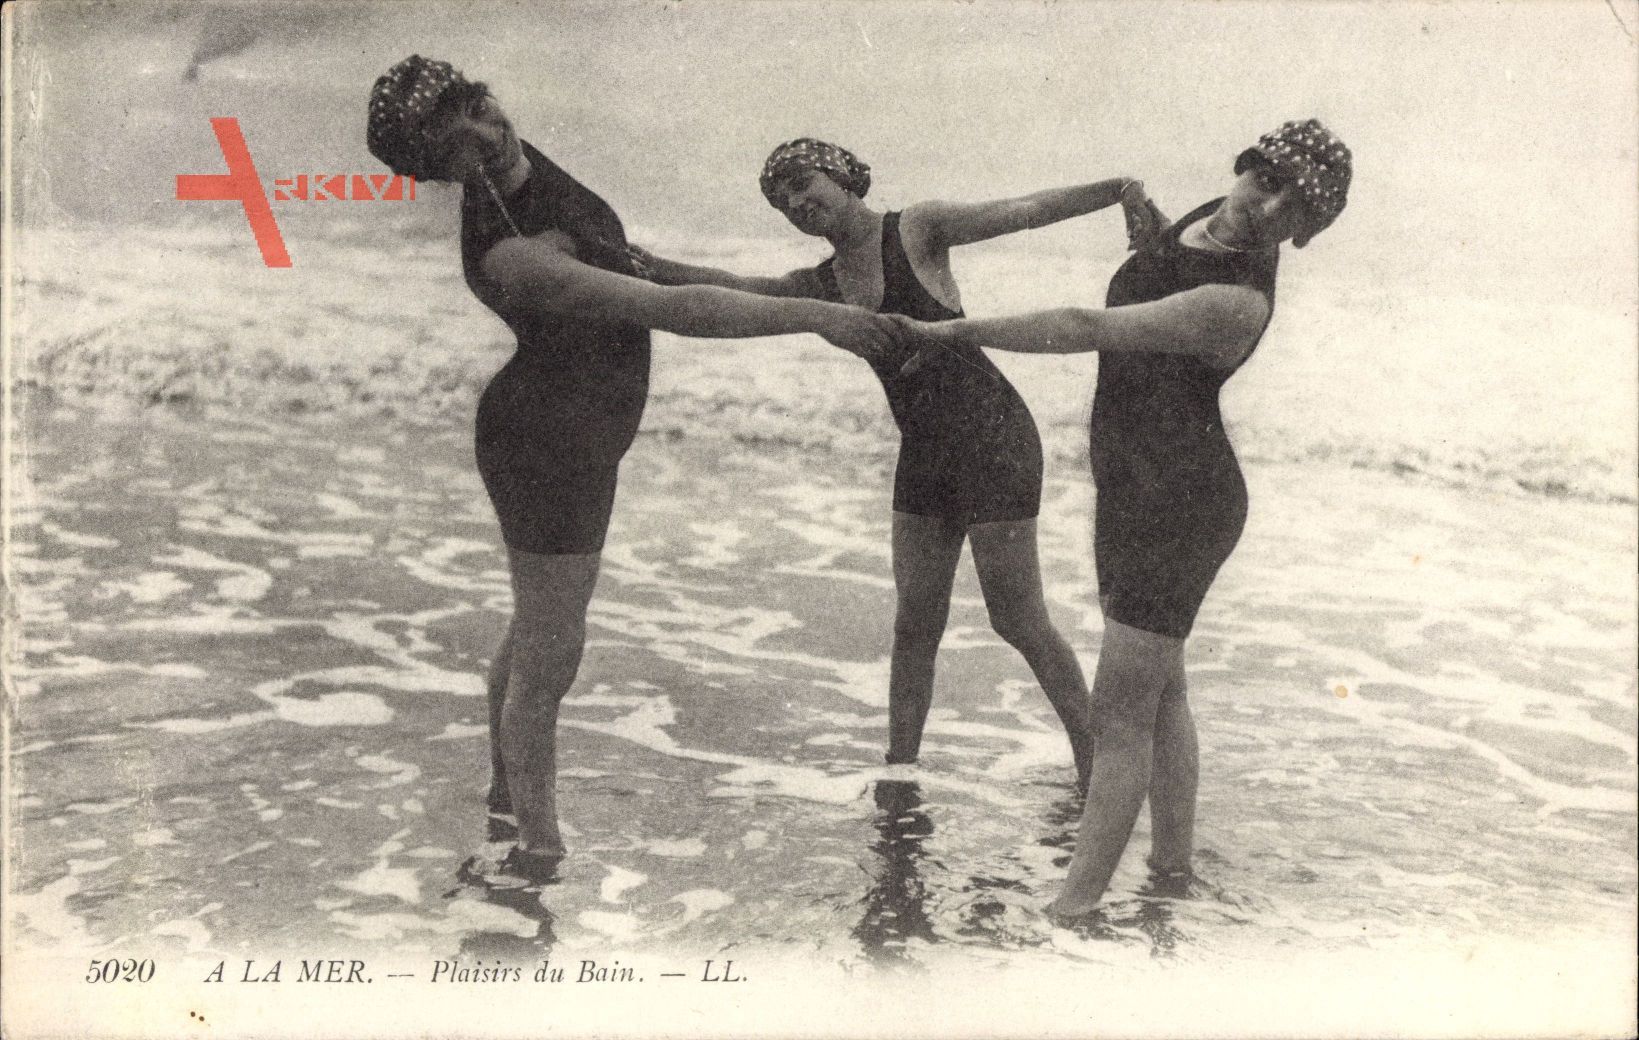 A la mer, Plaisirs du Bain, Frauen in Badekleidern im Wasser